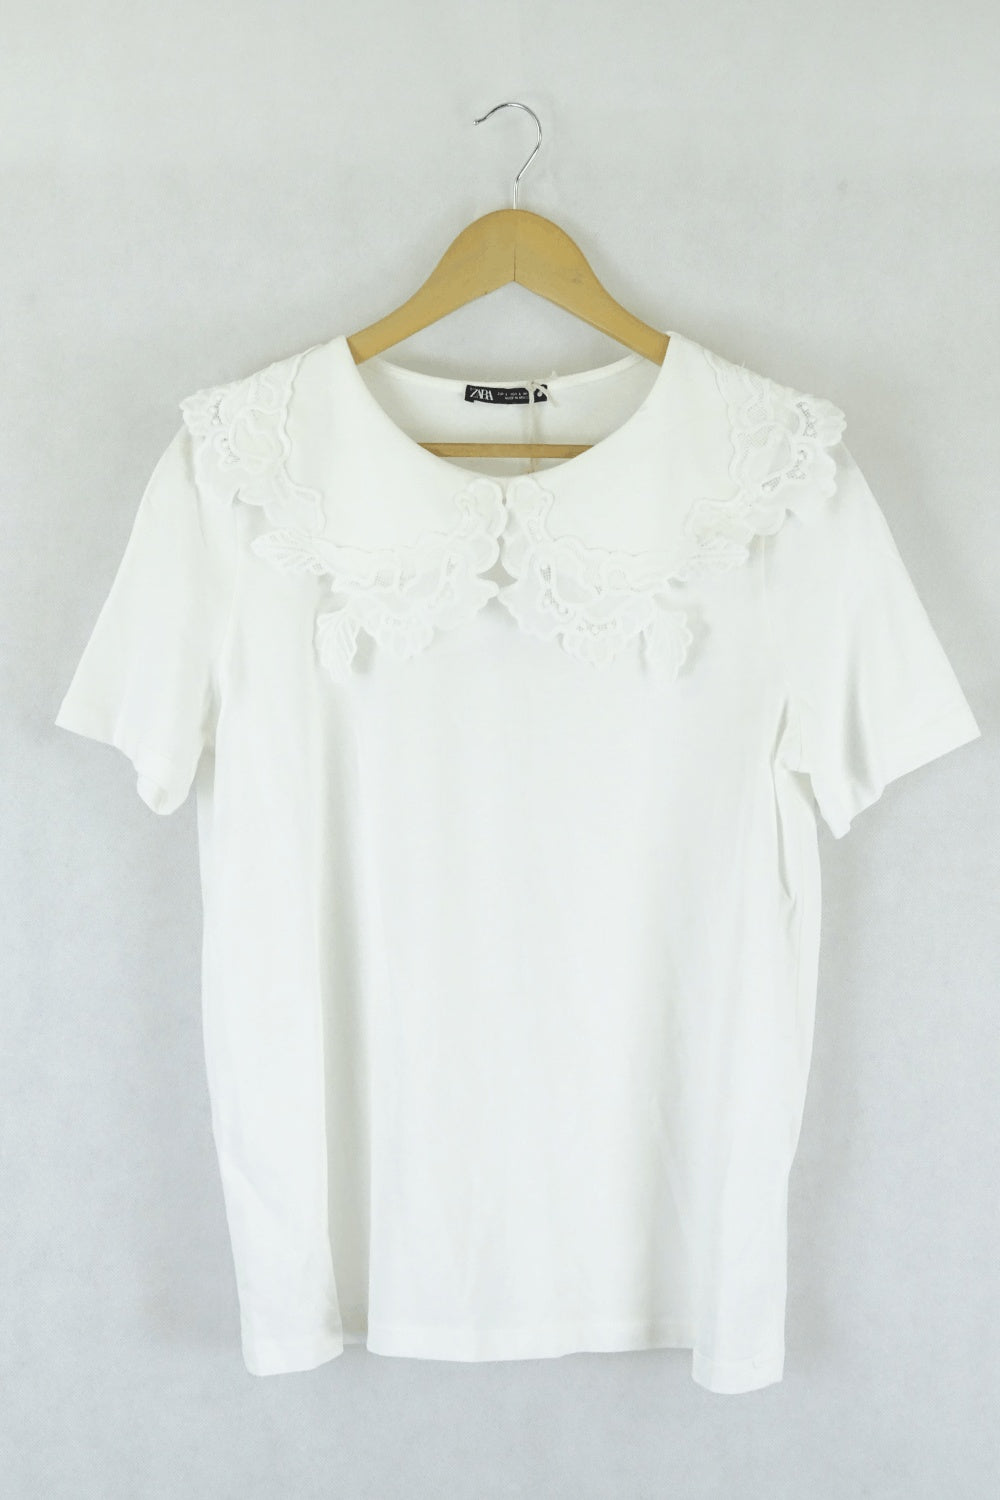 Zara White T-Shirt L